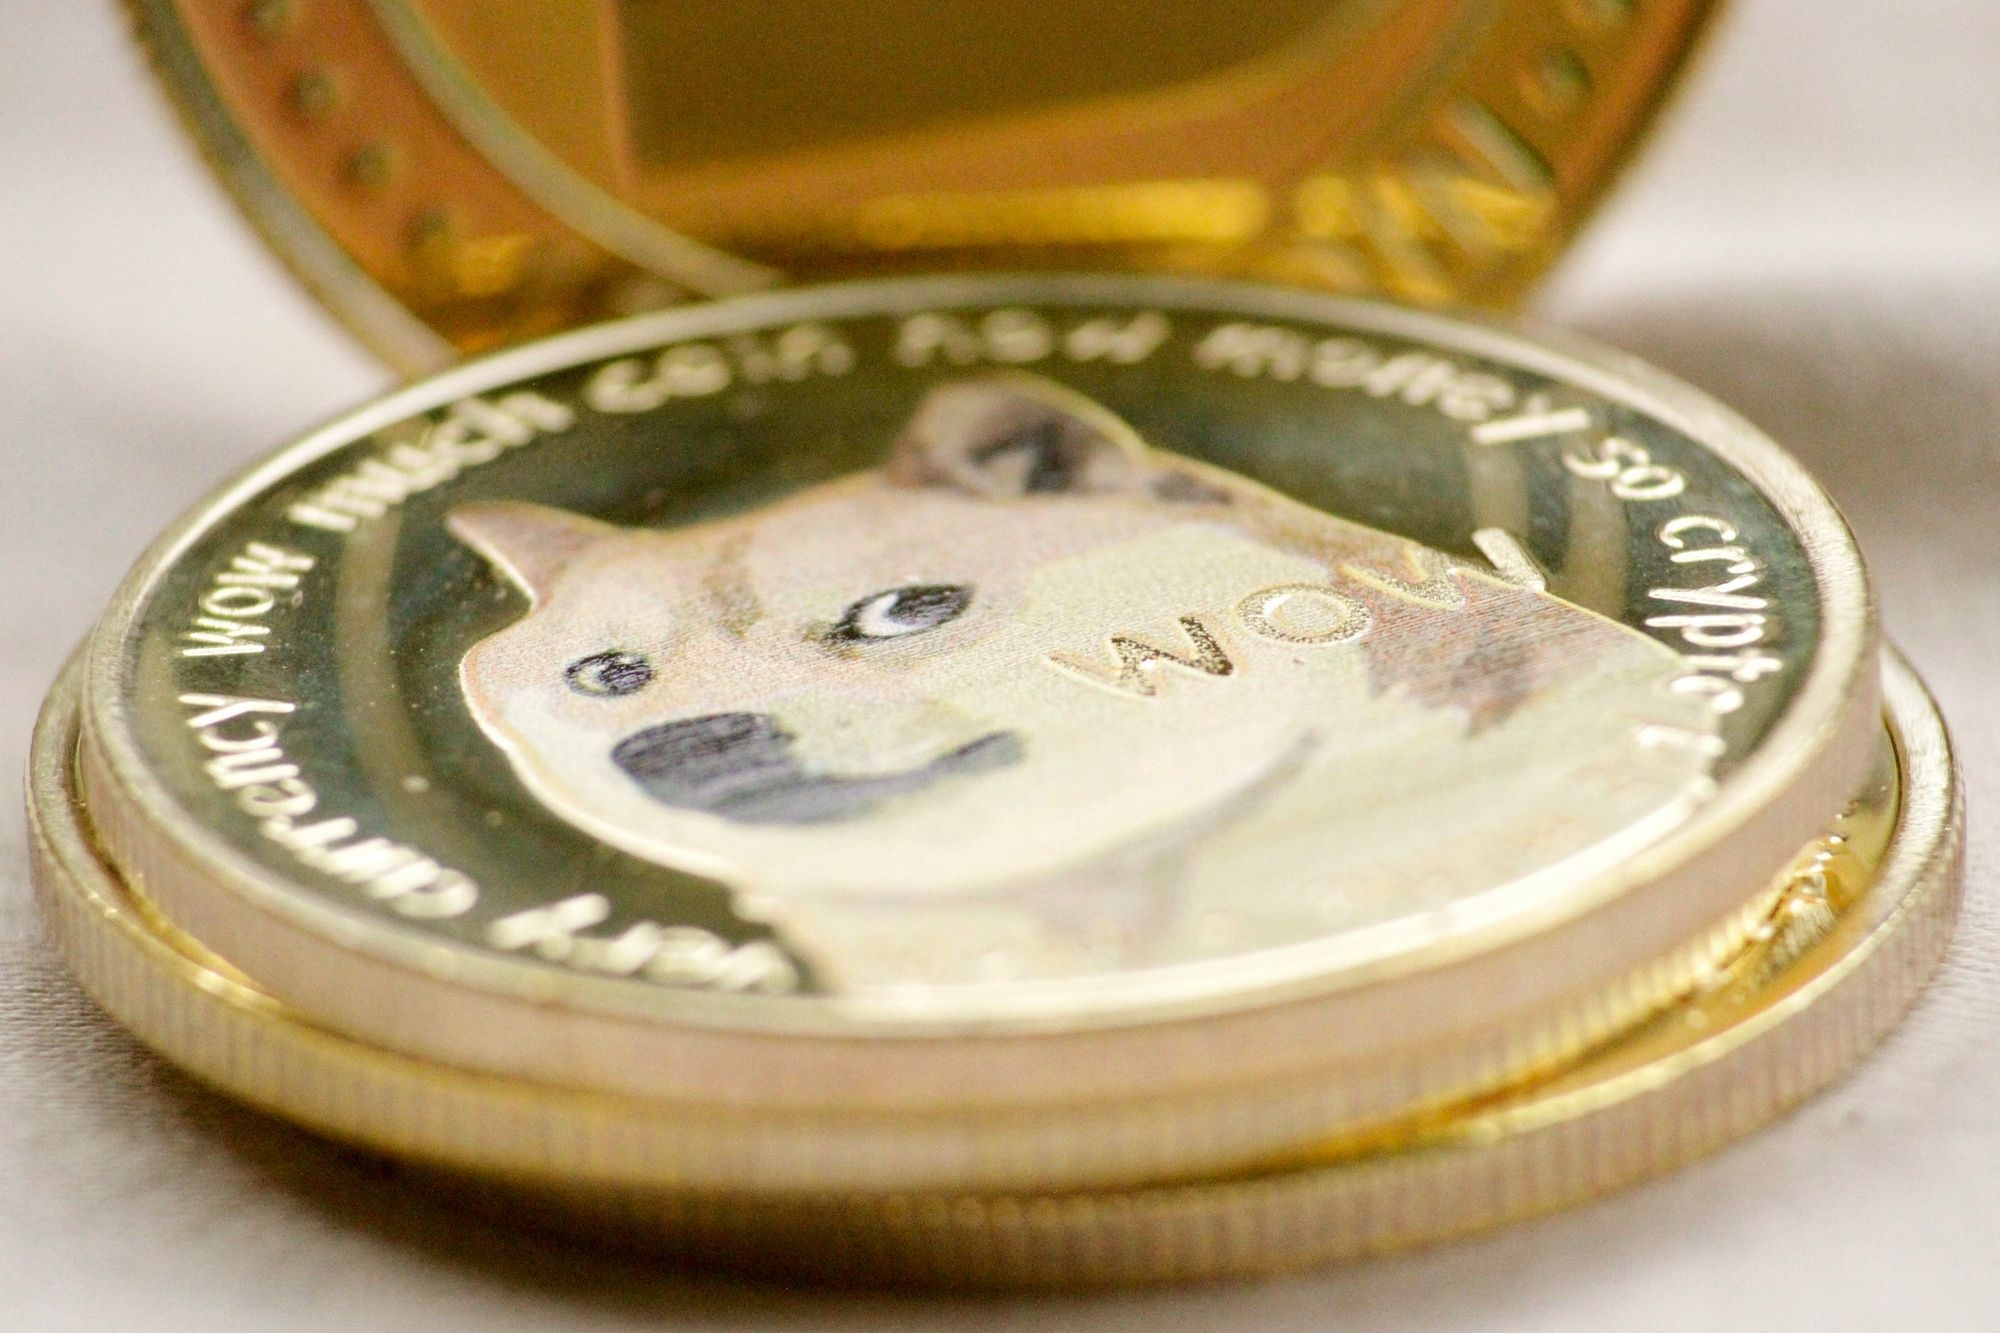 Rappresentazione della Dogecoin sulla moneta